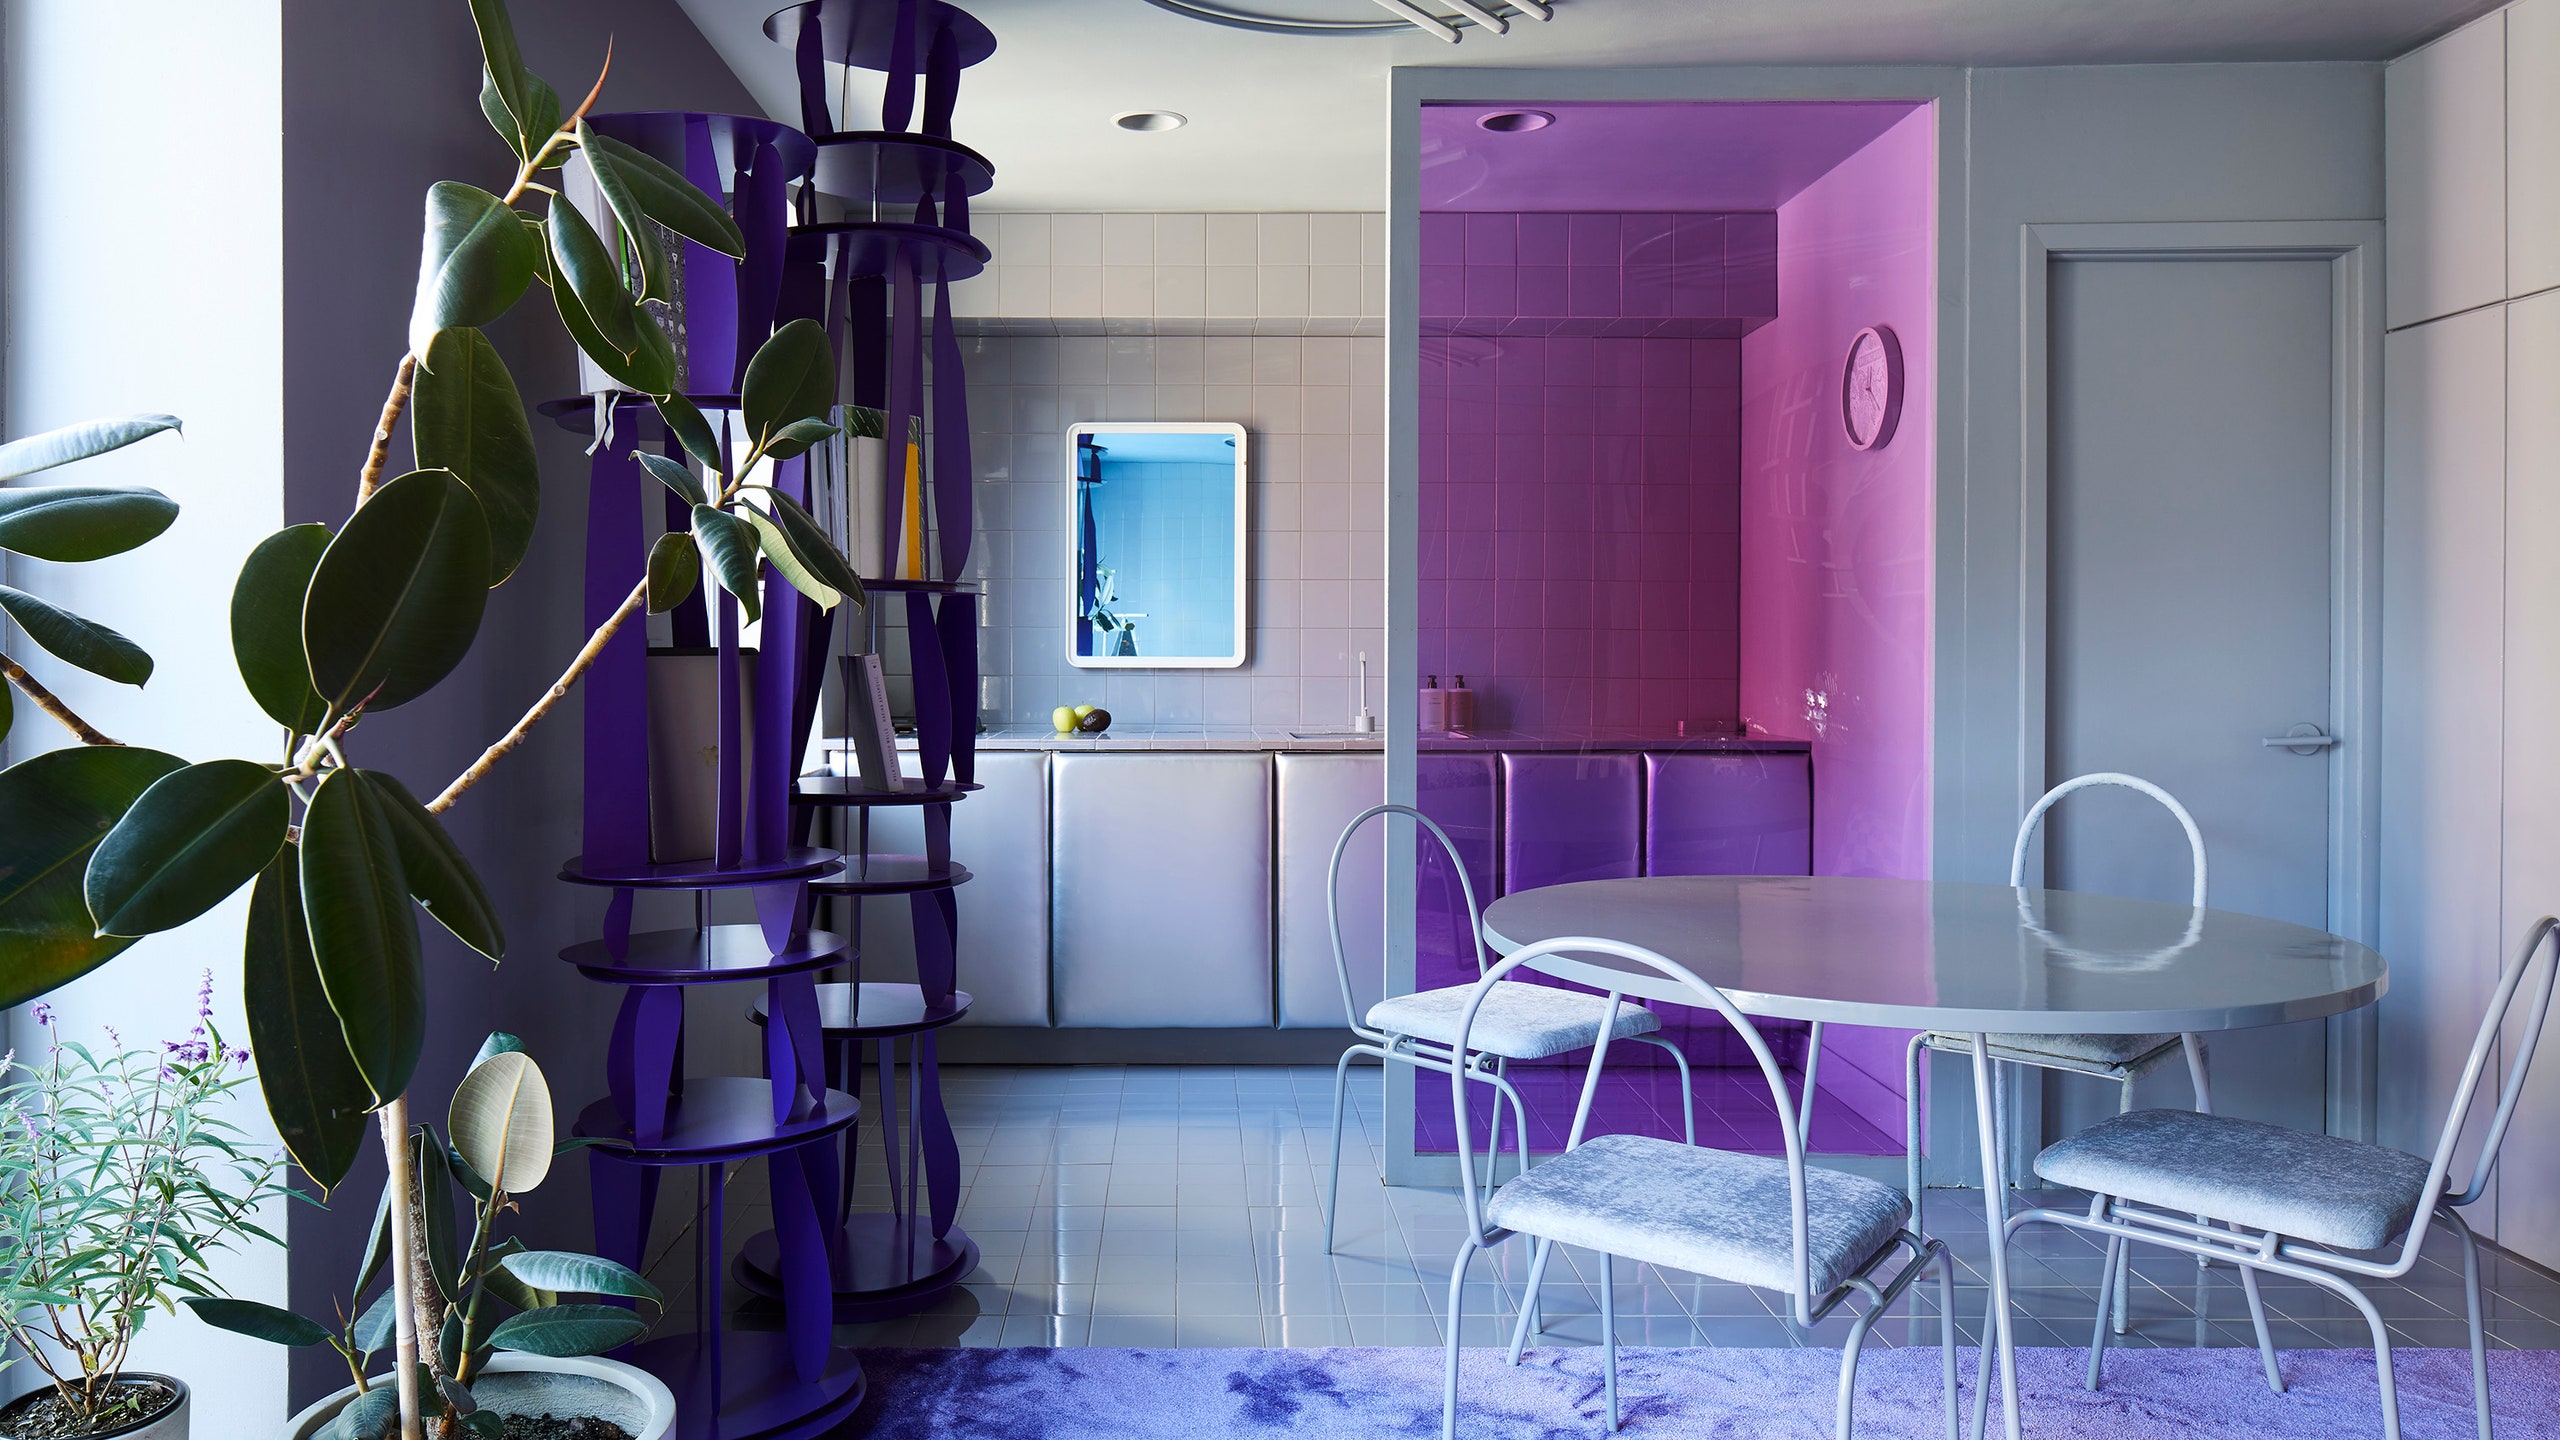 Двухуровневая квартира в пурпурных тонах дизайнера Гарри Нуриева